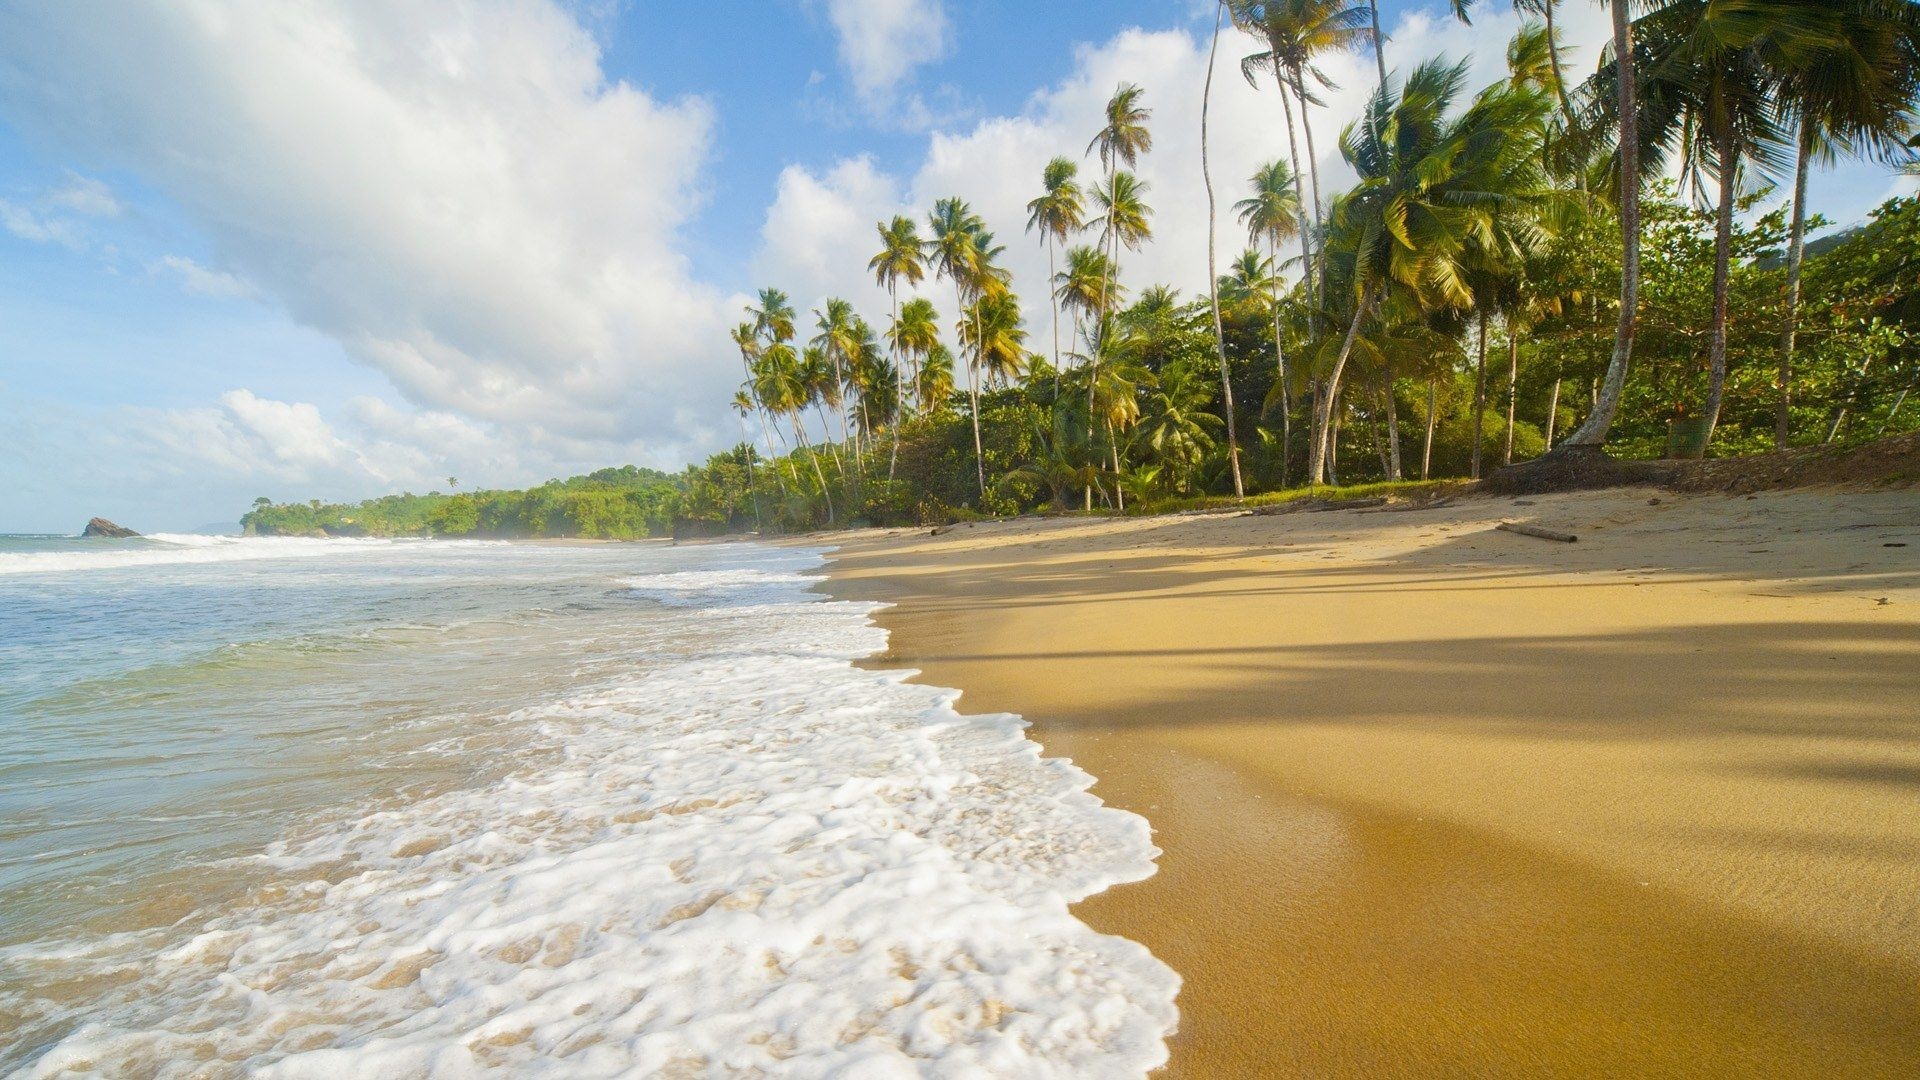 Caribbean Sea, Peaceful beaches, Kerala, Port of Spain, 1920x1080 Full HD Desktop